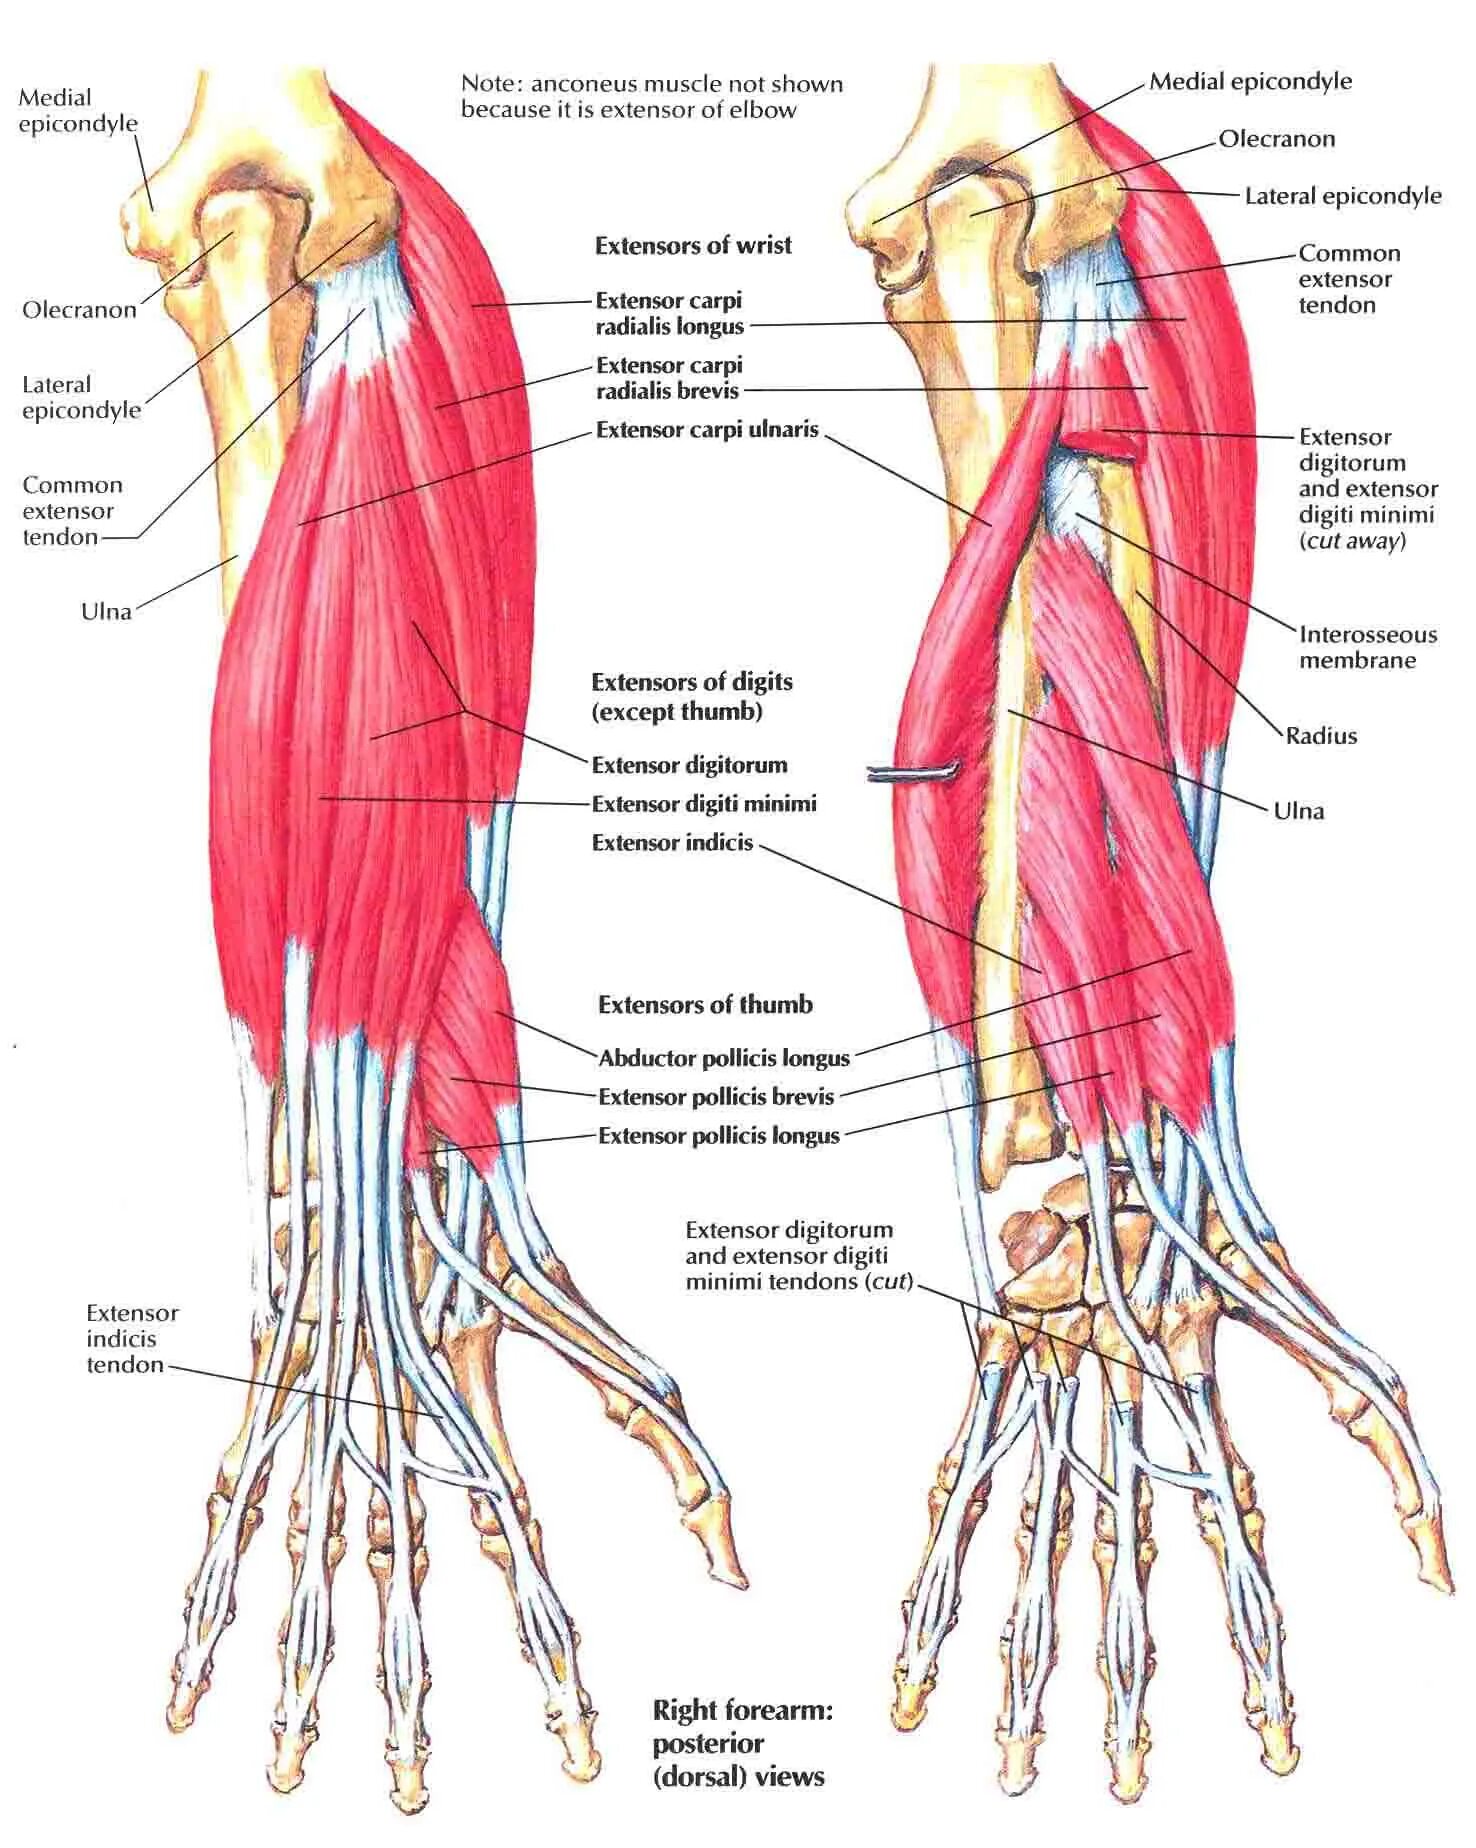 Мышцы предплечья анатомия человека. Строение локтя и предплечья. Кости руки человека и мышцы предплечья. Внутреннее строение предплечья.